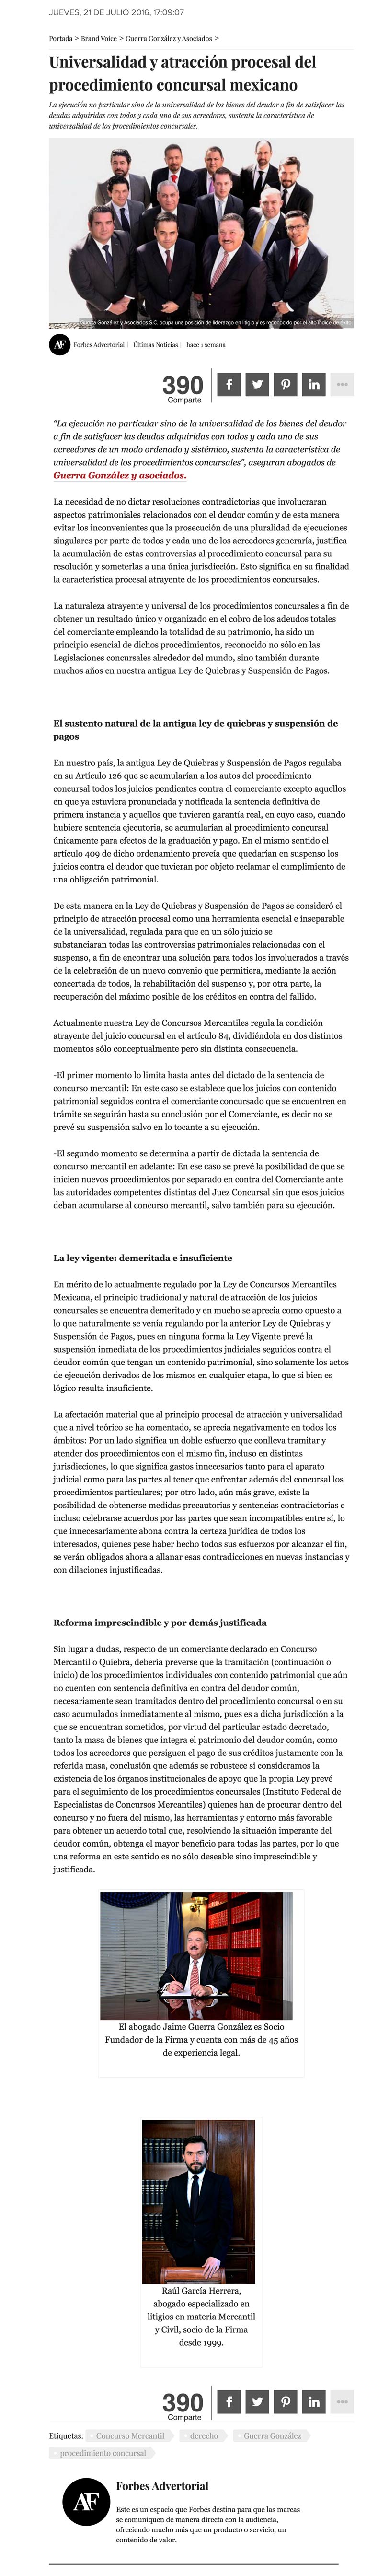 forbes-com-mx-universalidad-atraccion-procesal-del-procedimiento-concursal-mexicano-